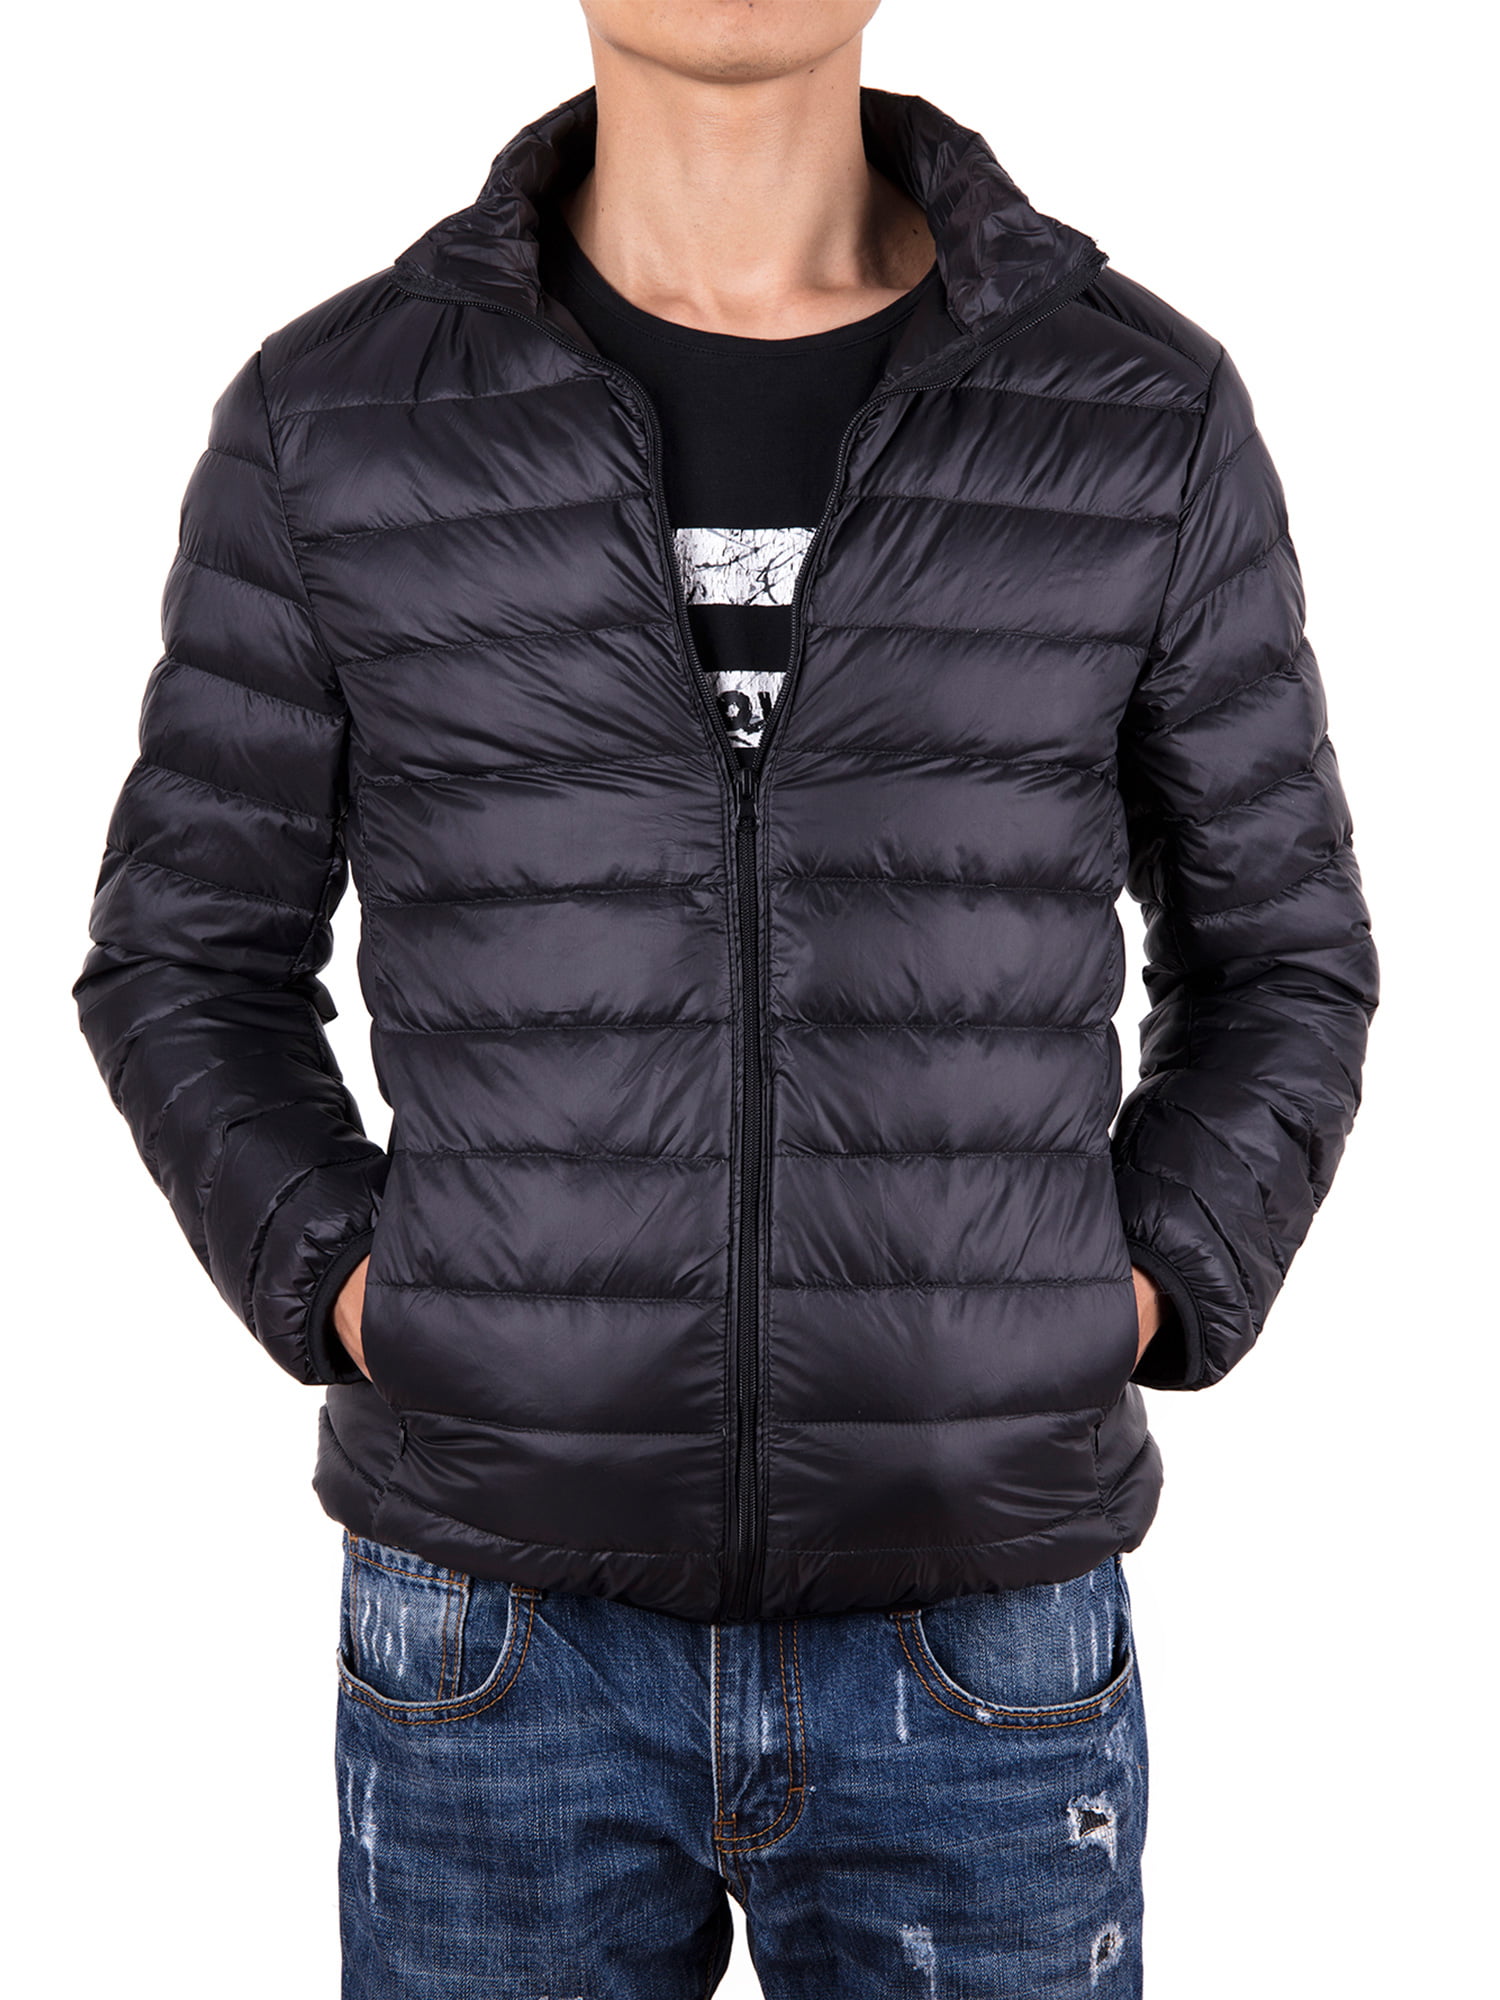 Men Down Jacket Outwear Puffer Coats Casual Zip Up Windbreaker Lightweight Winter Jackets Black